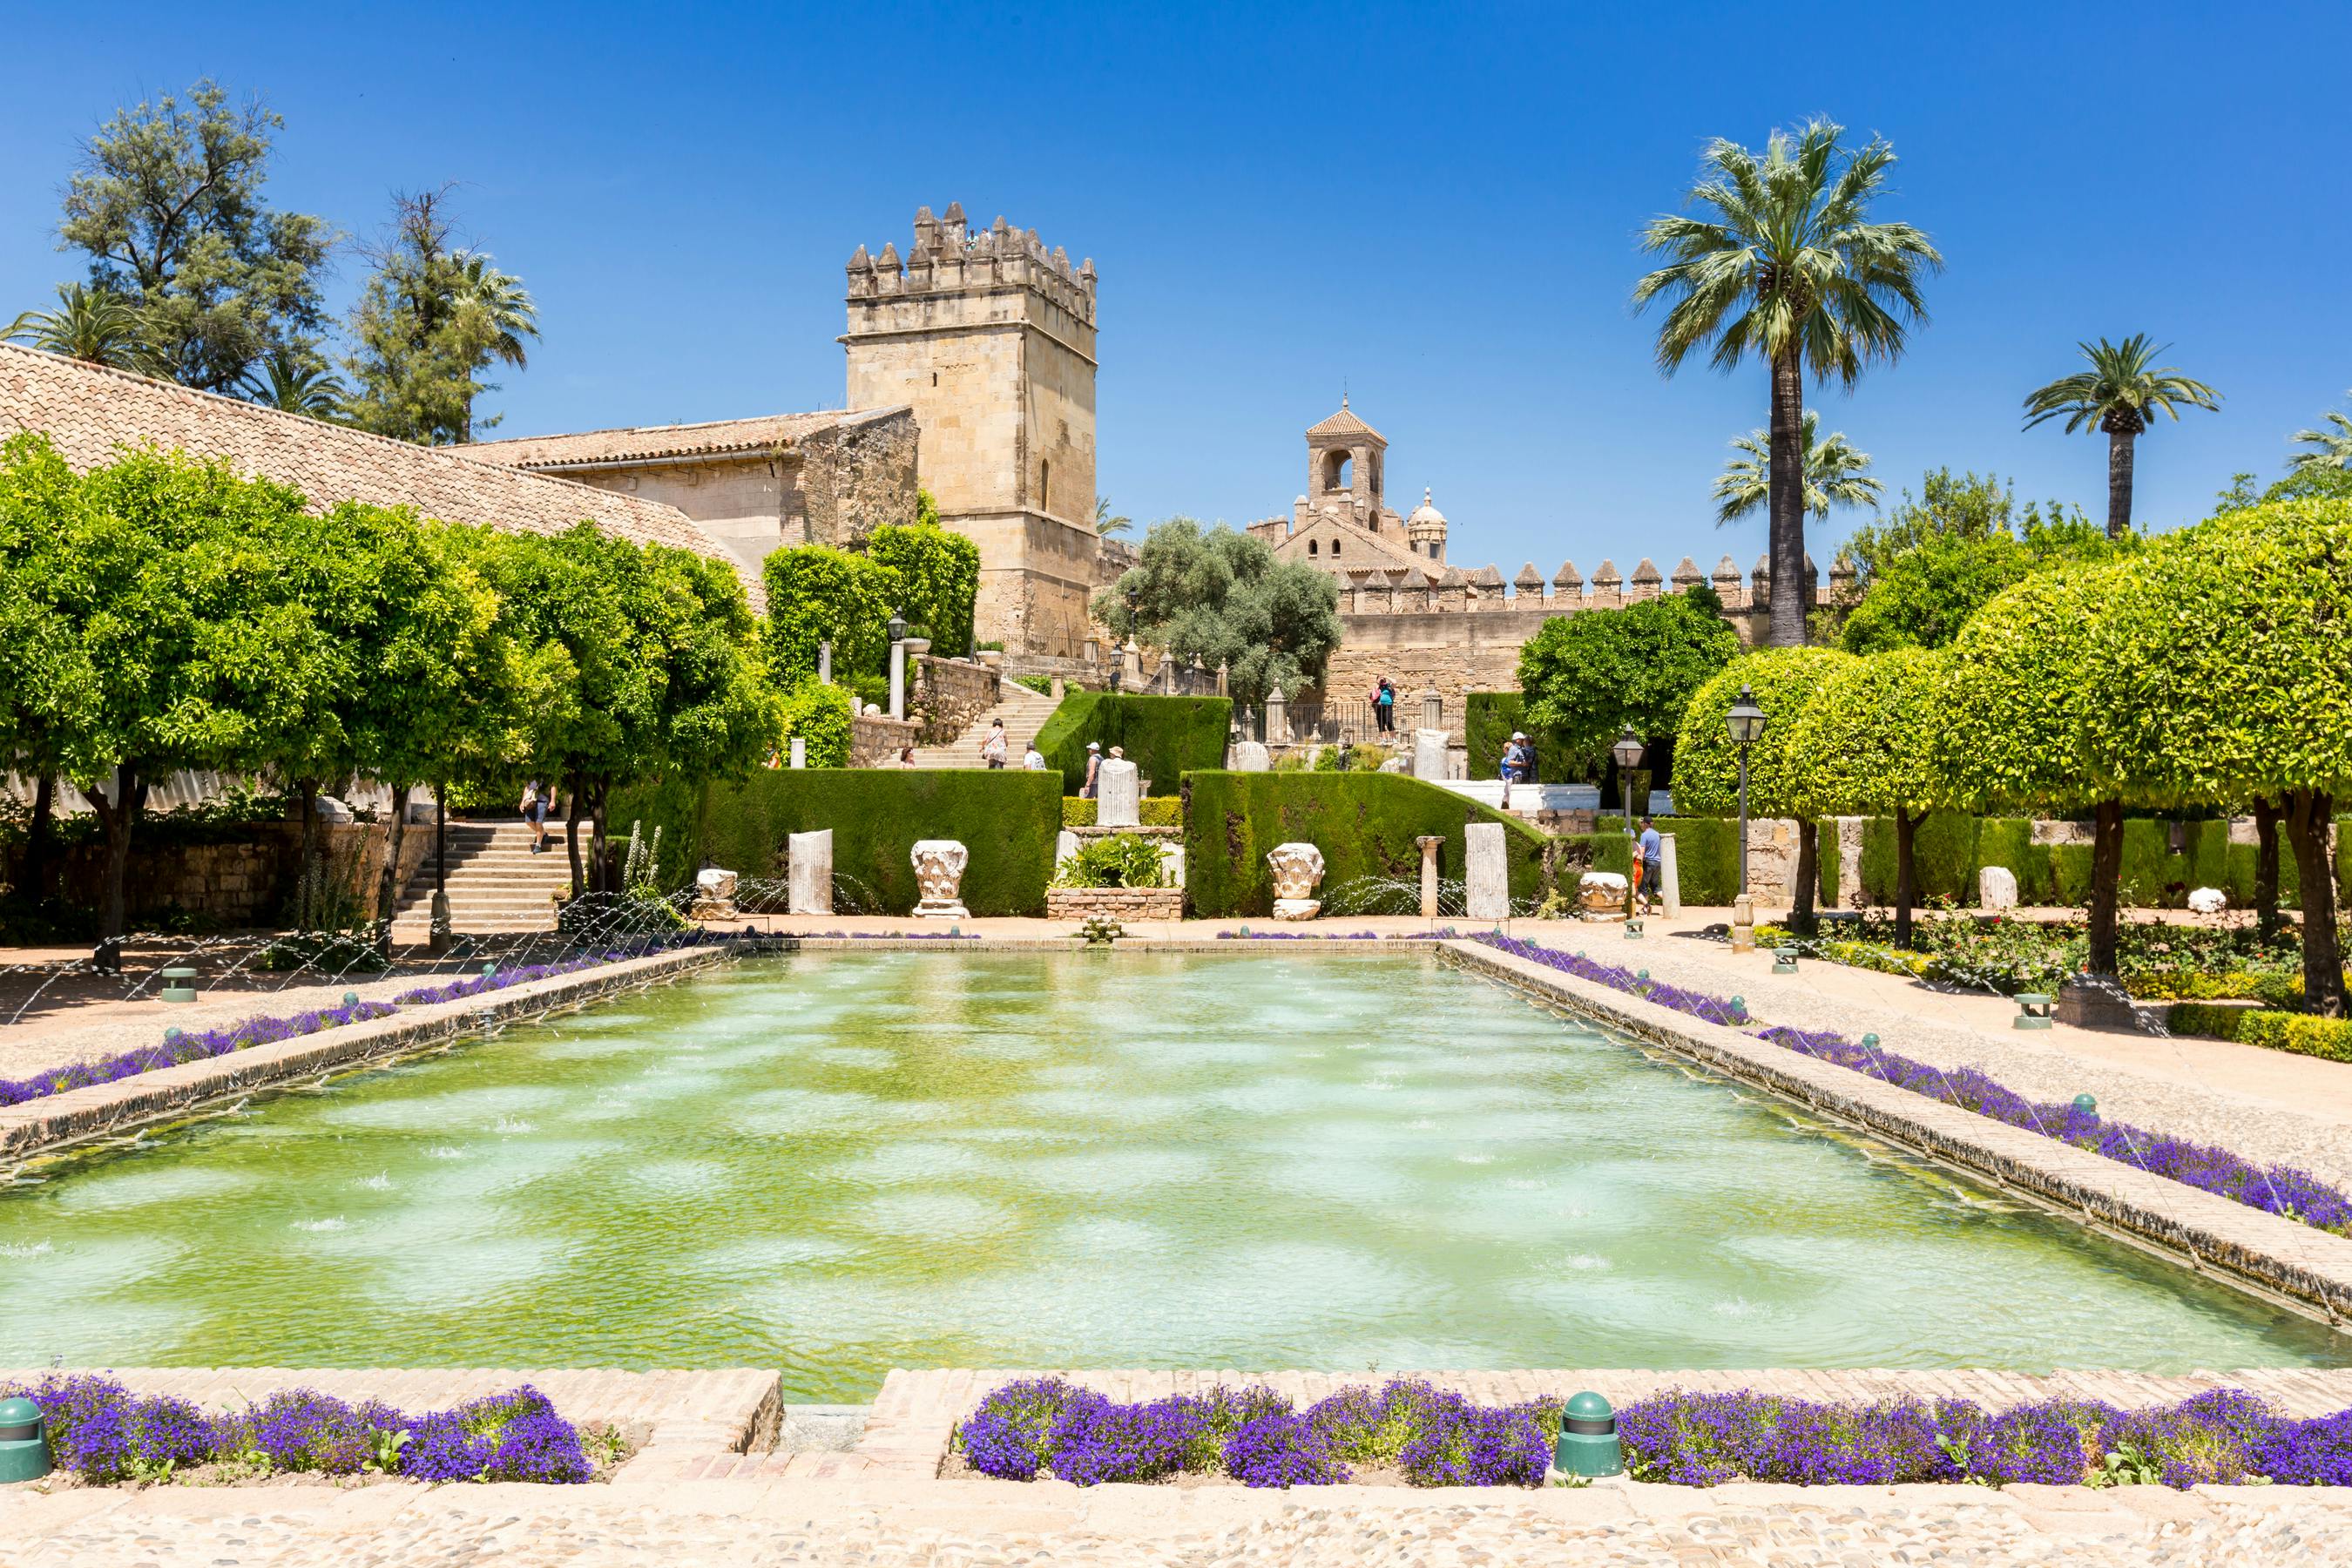 Visita guiada ao Alcázar de los Reyes Cristianos